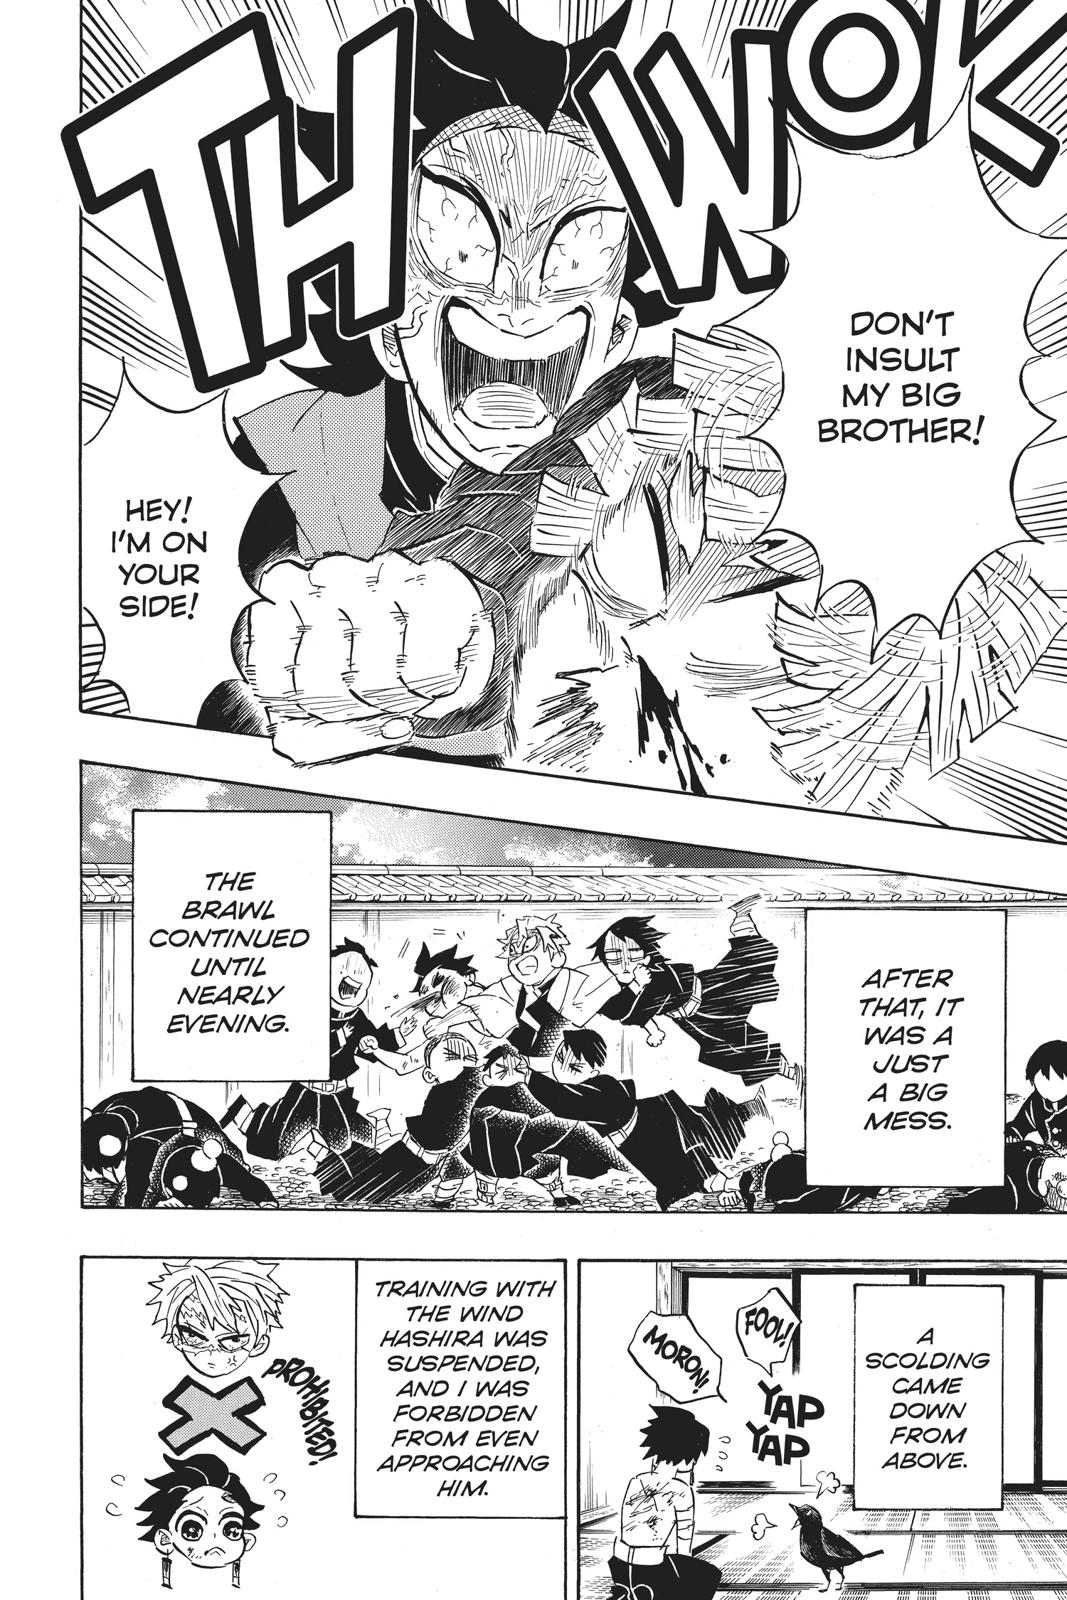 Demon Slayer Manga Manga Chapter - 133 - image 15